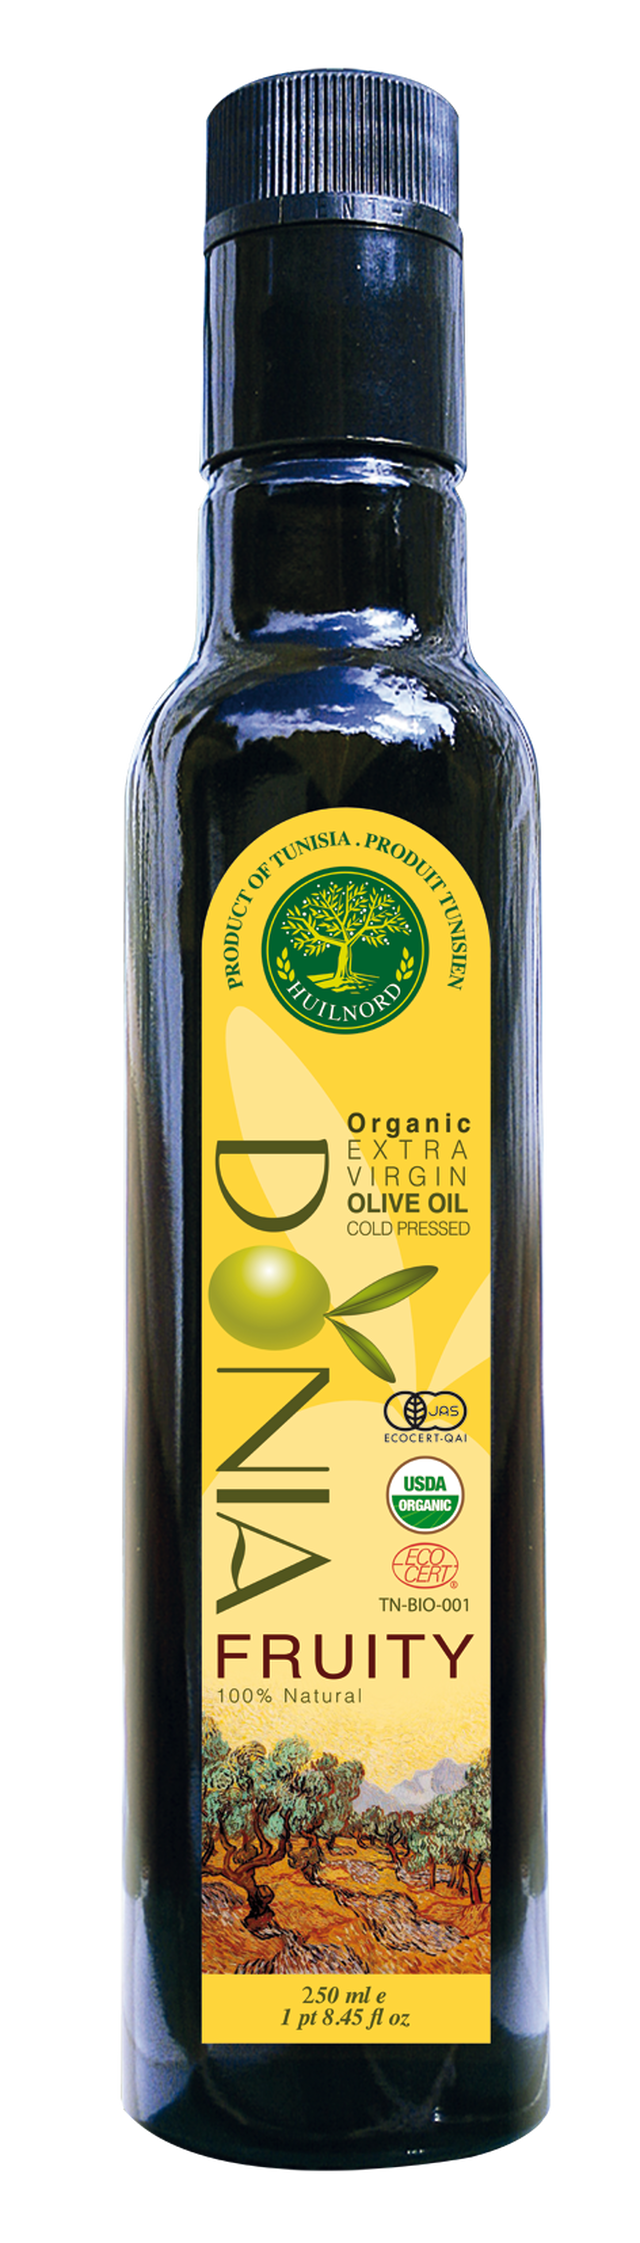 オーガニック エキストラバージンオリーブオイル Donia Fruity 250ml 自然栽培オリーブオイル専門店 Olives